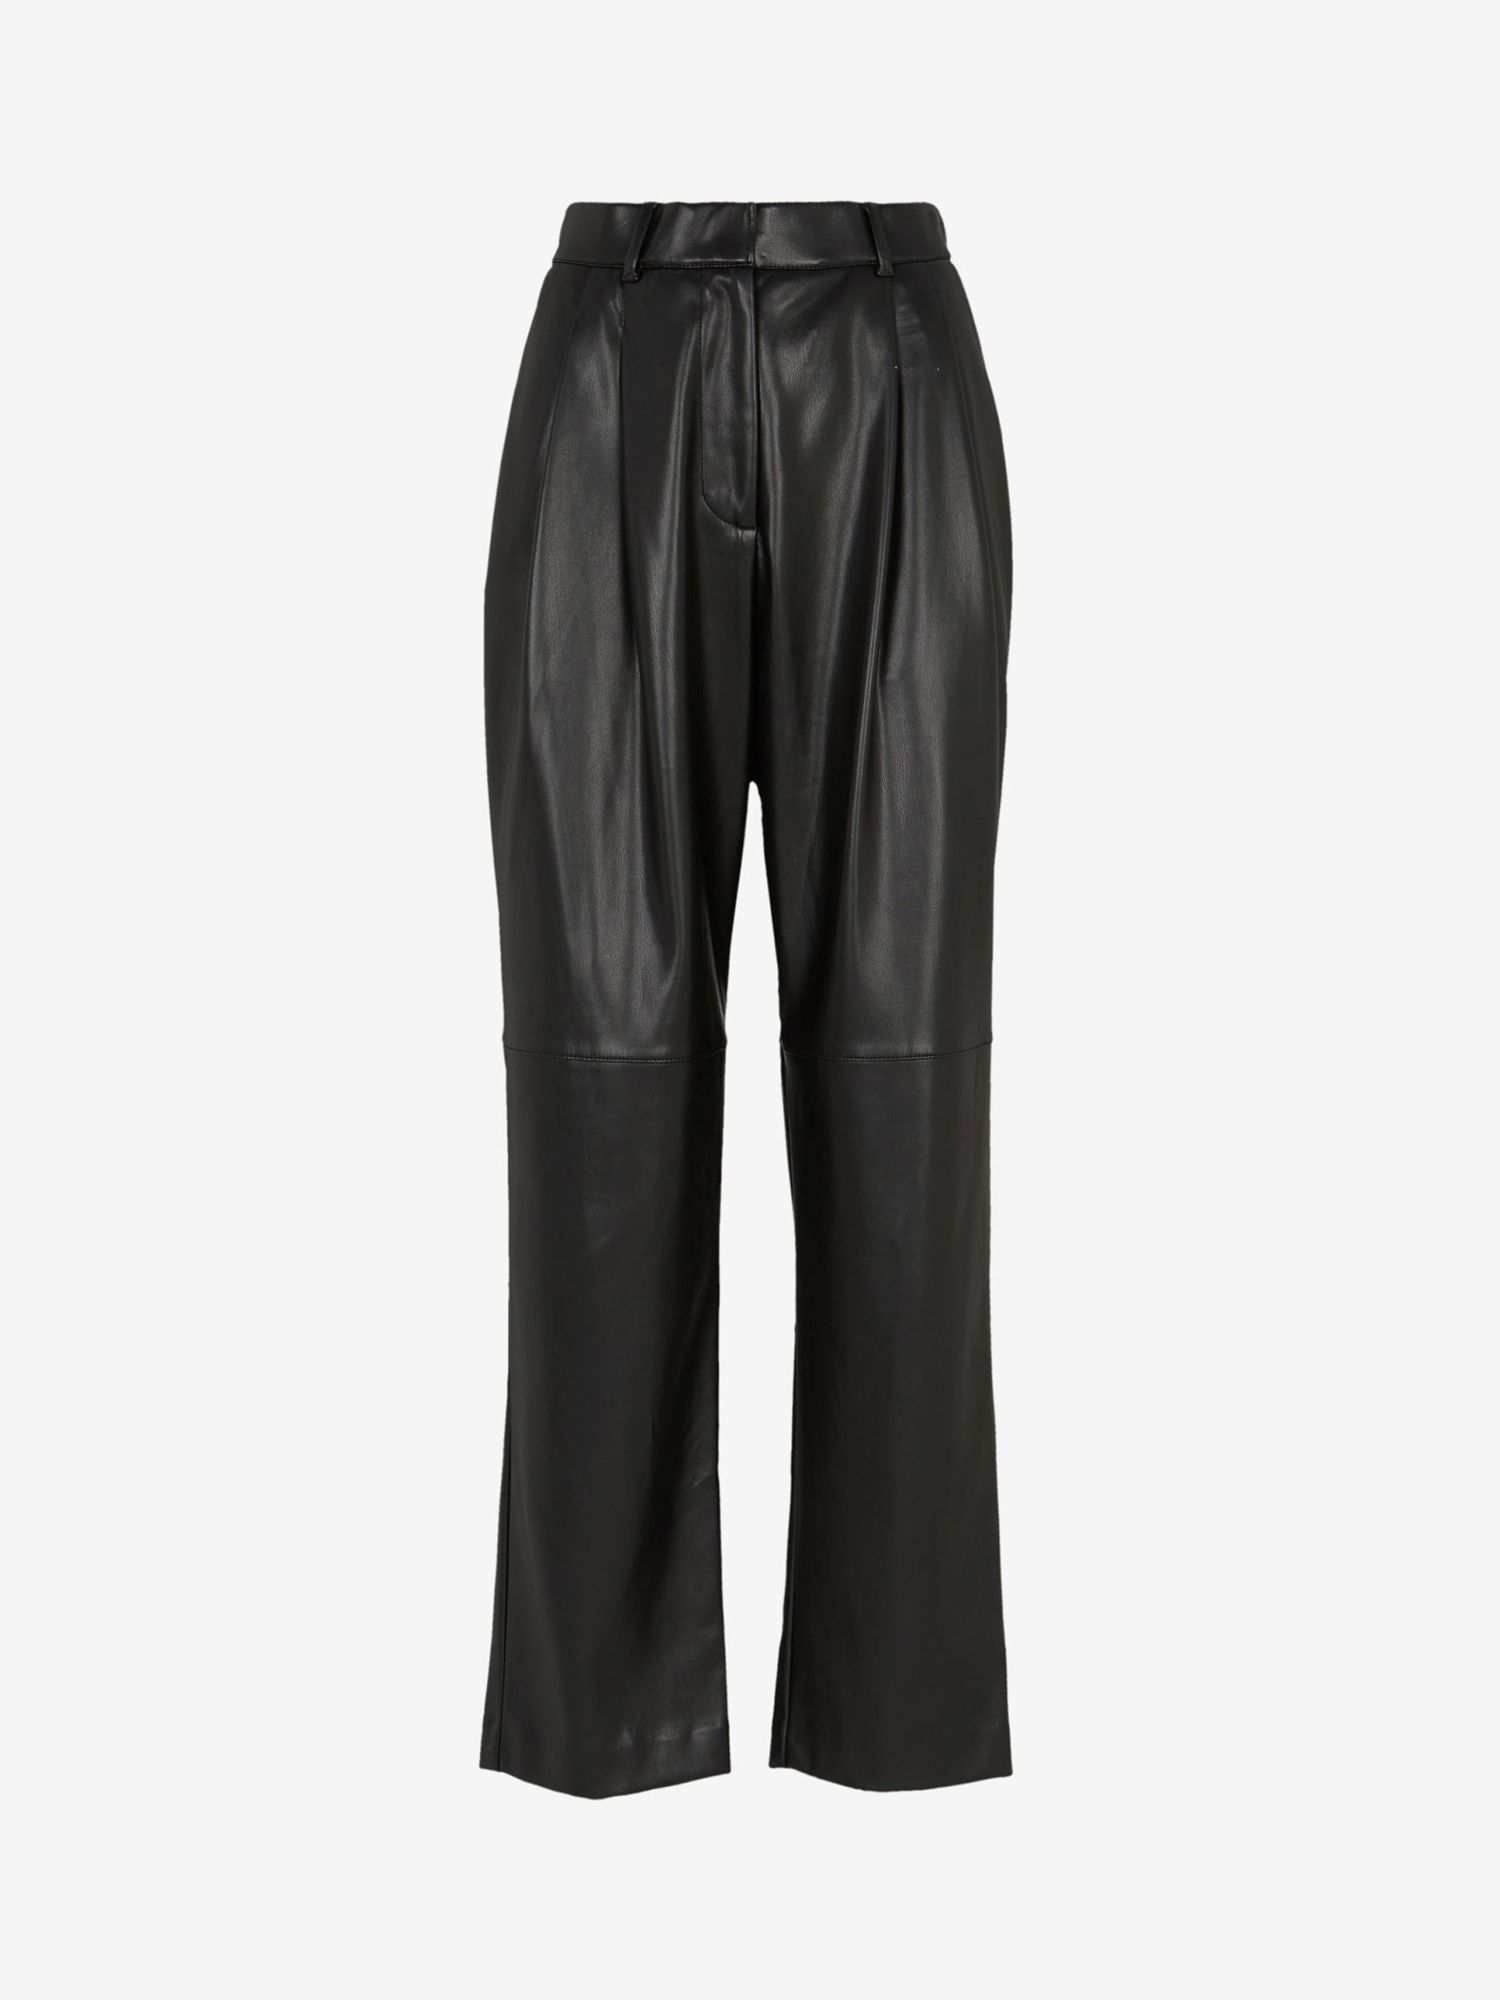 Mint Velvet Pleat Front Faux Leather Trousers, Black, 12R